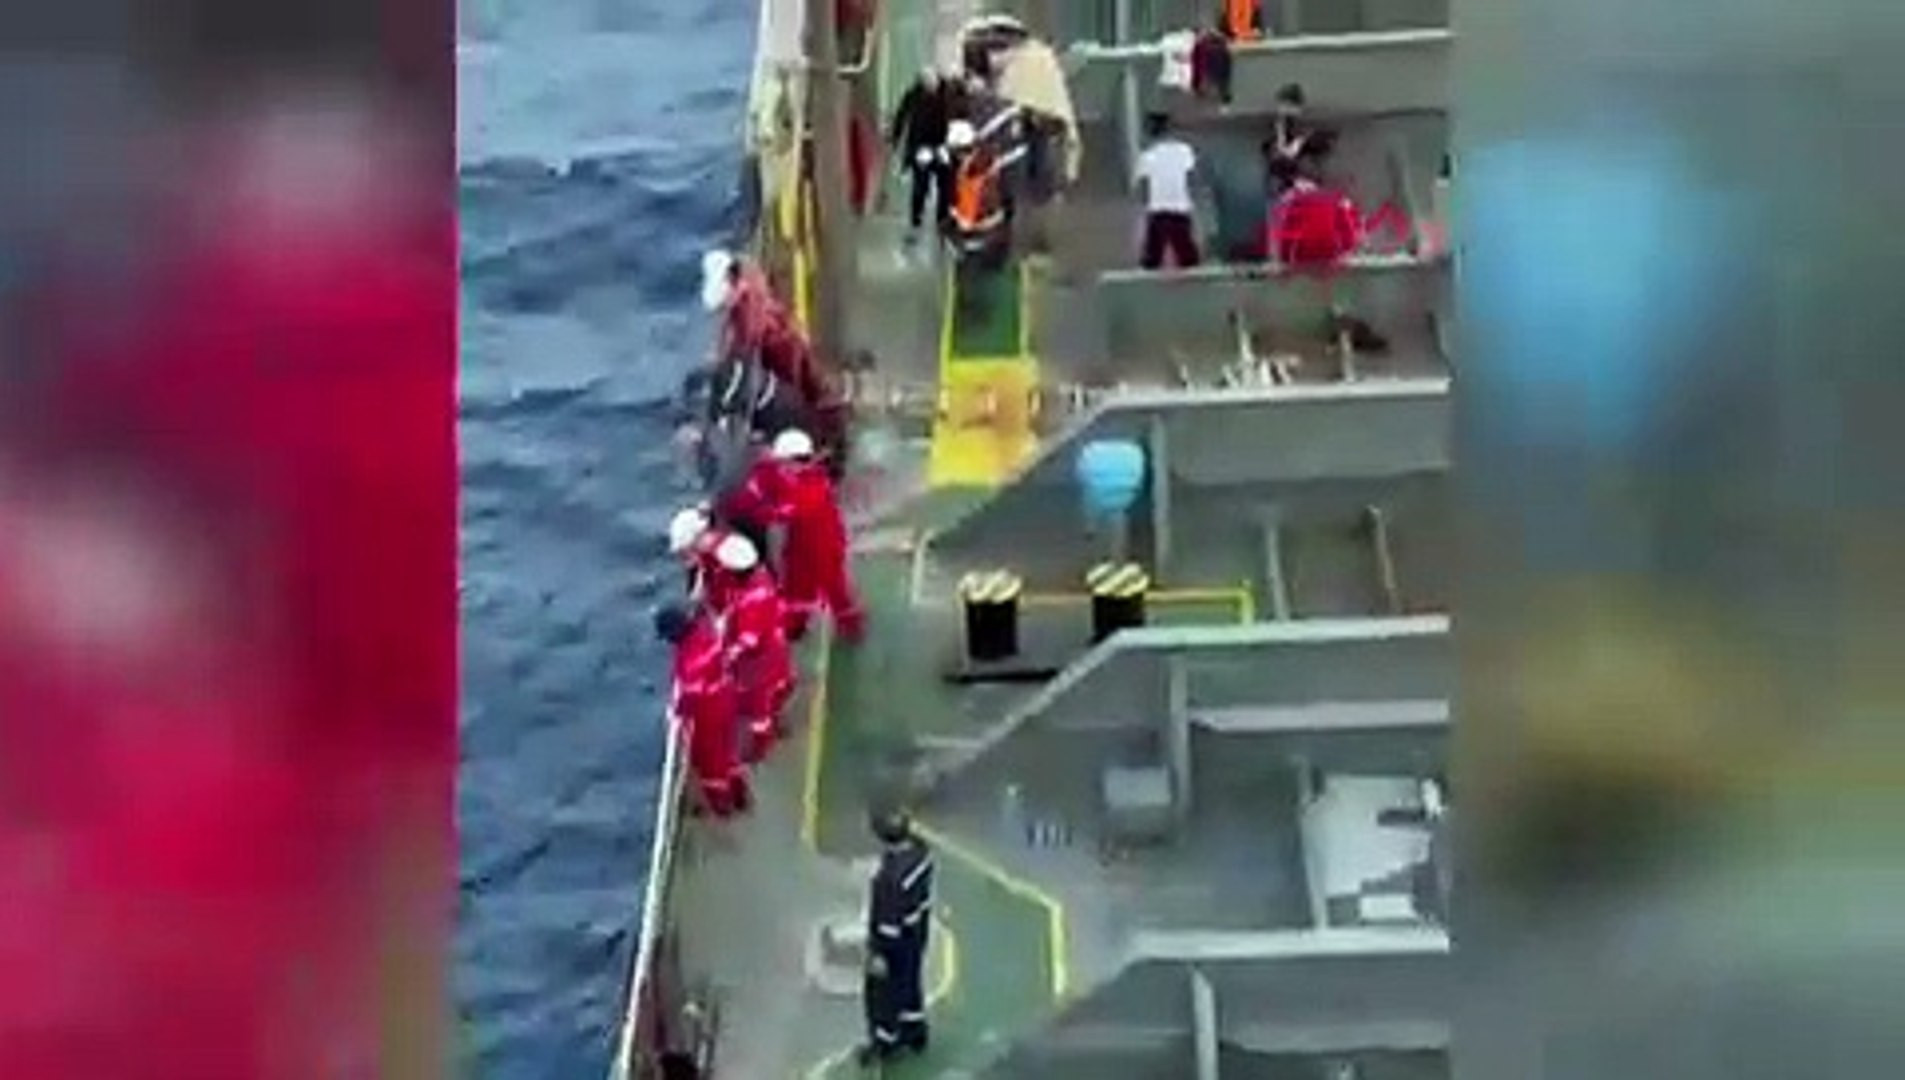 Türk gemisi 120 mülteciyi kurtardı! Filmleri aratmayan görüntüler